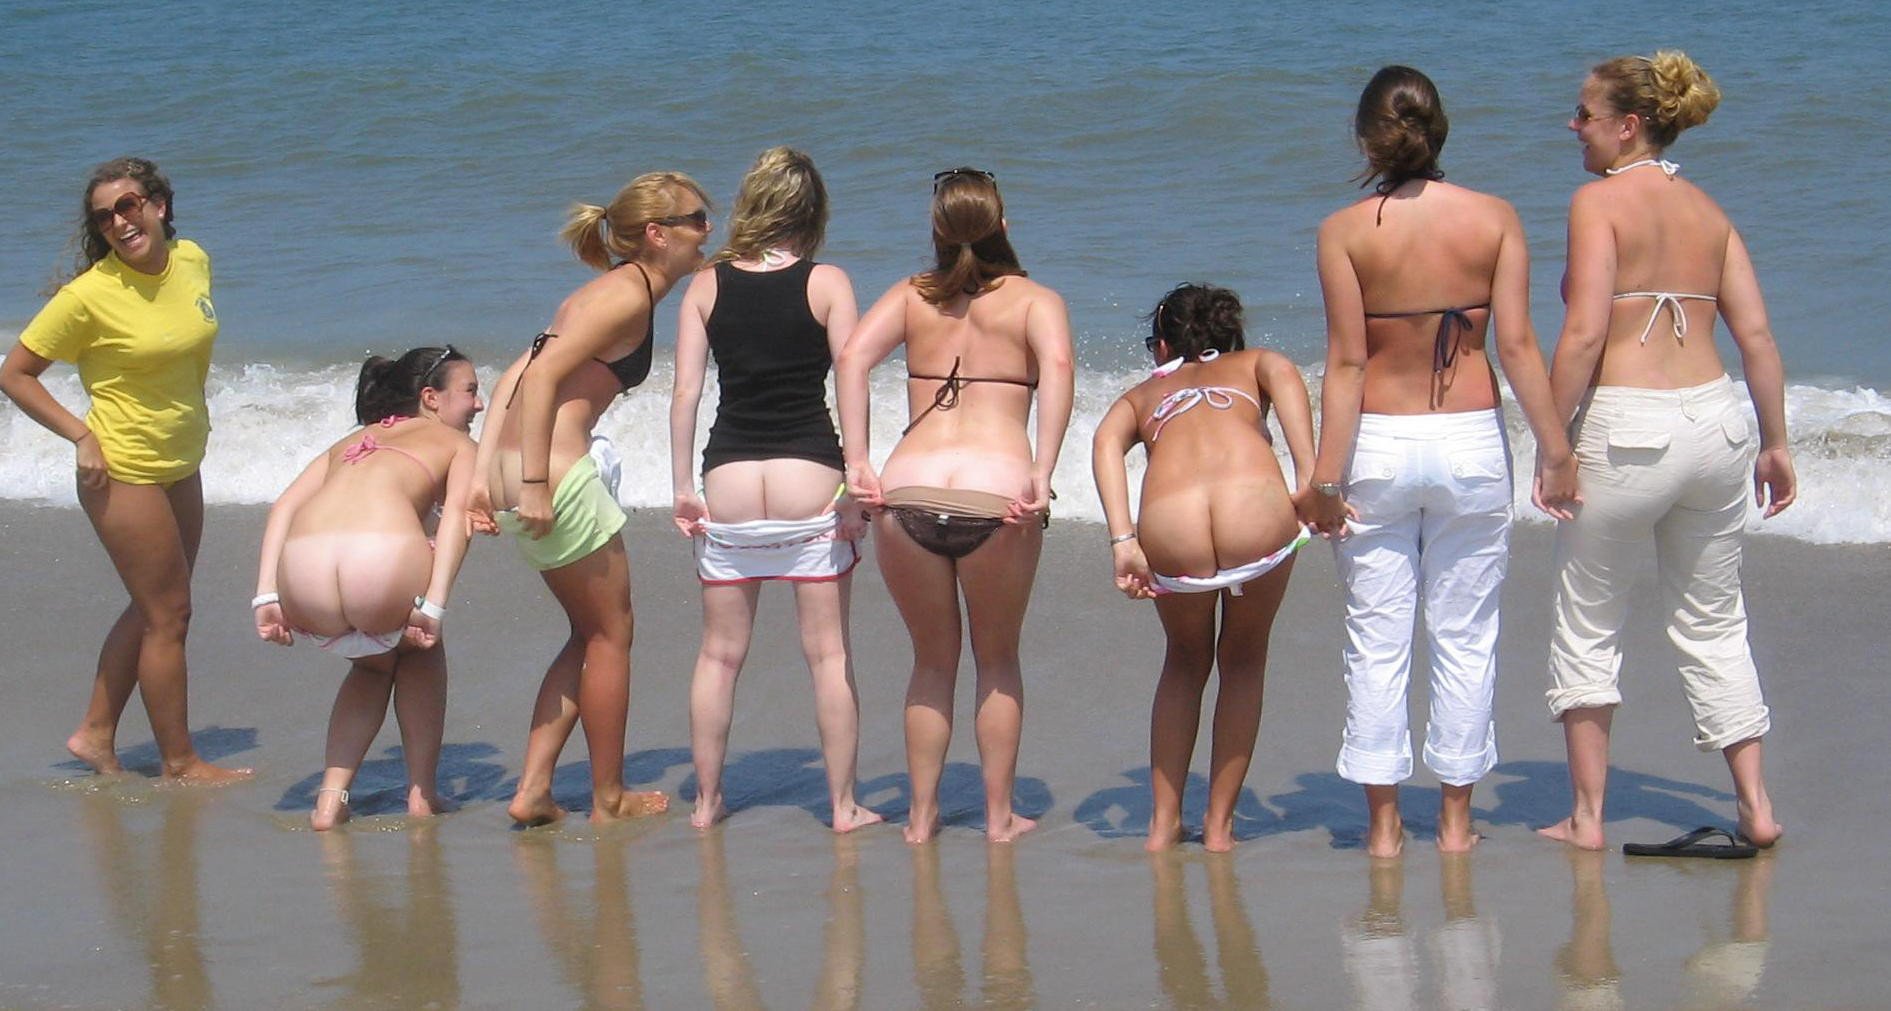 Стройные нудистки отдыхают на пляже без бикини 11 фотография